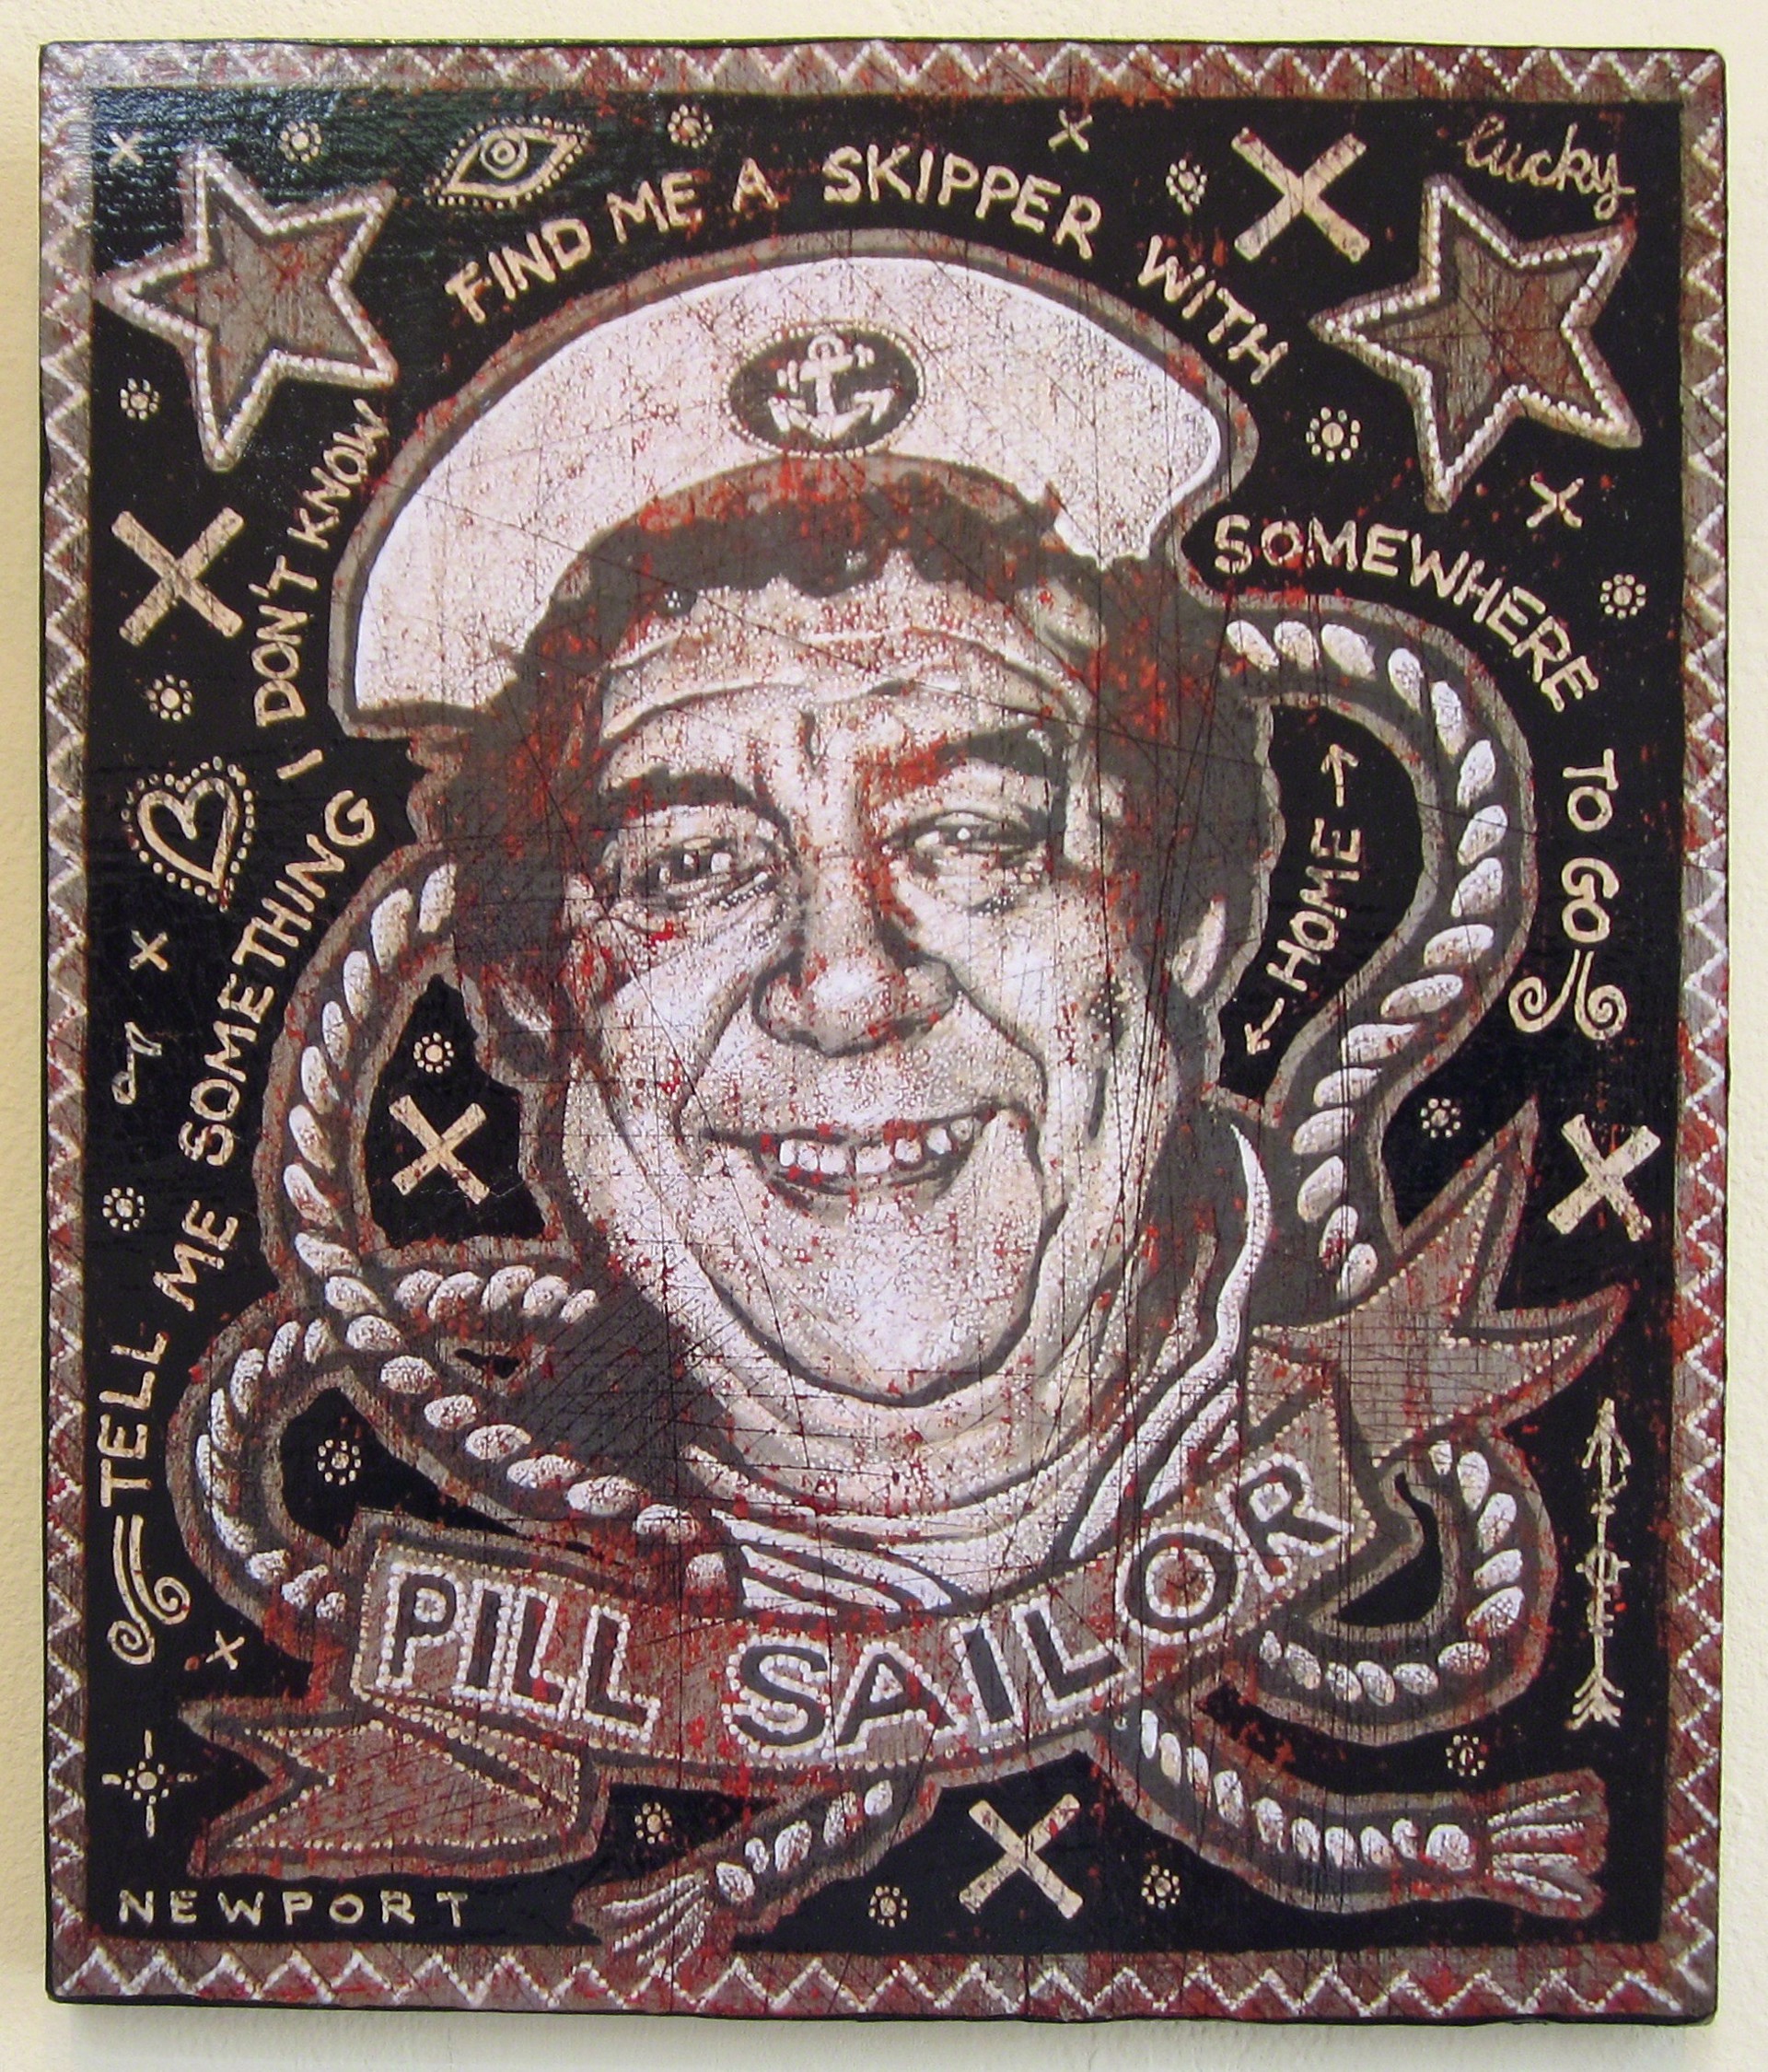 Pill Sailor (A.P.) by Jon Langford